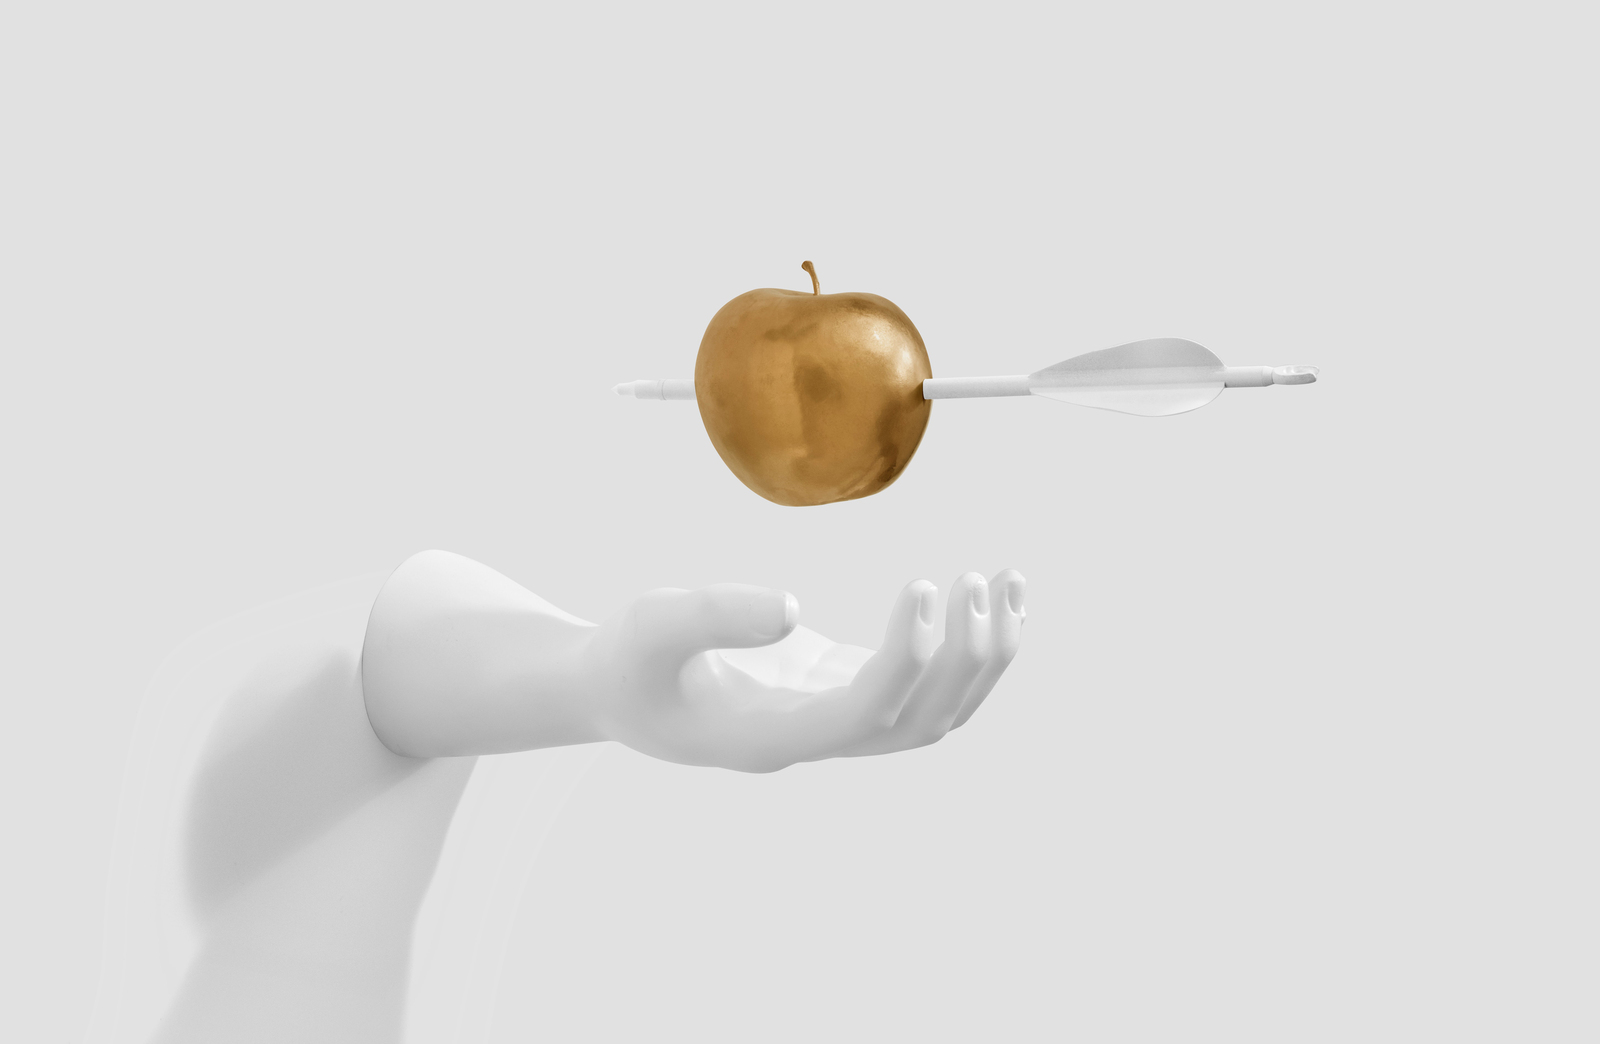 Mano a punto de sostener una manzana dorada atravesada por una flecha